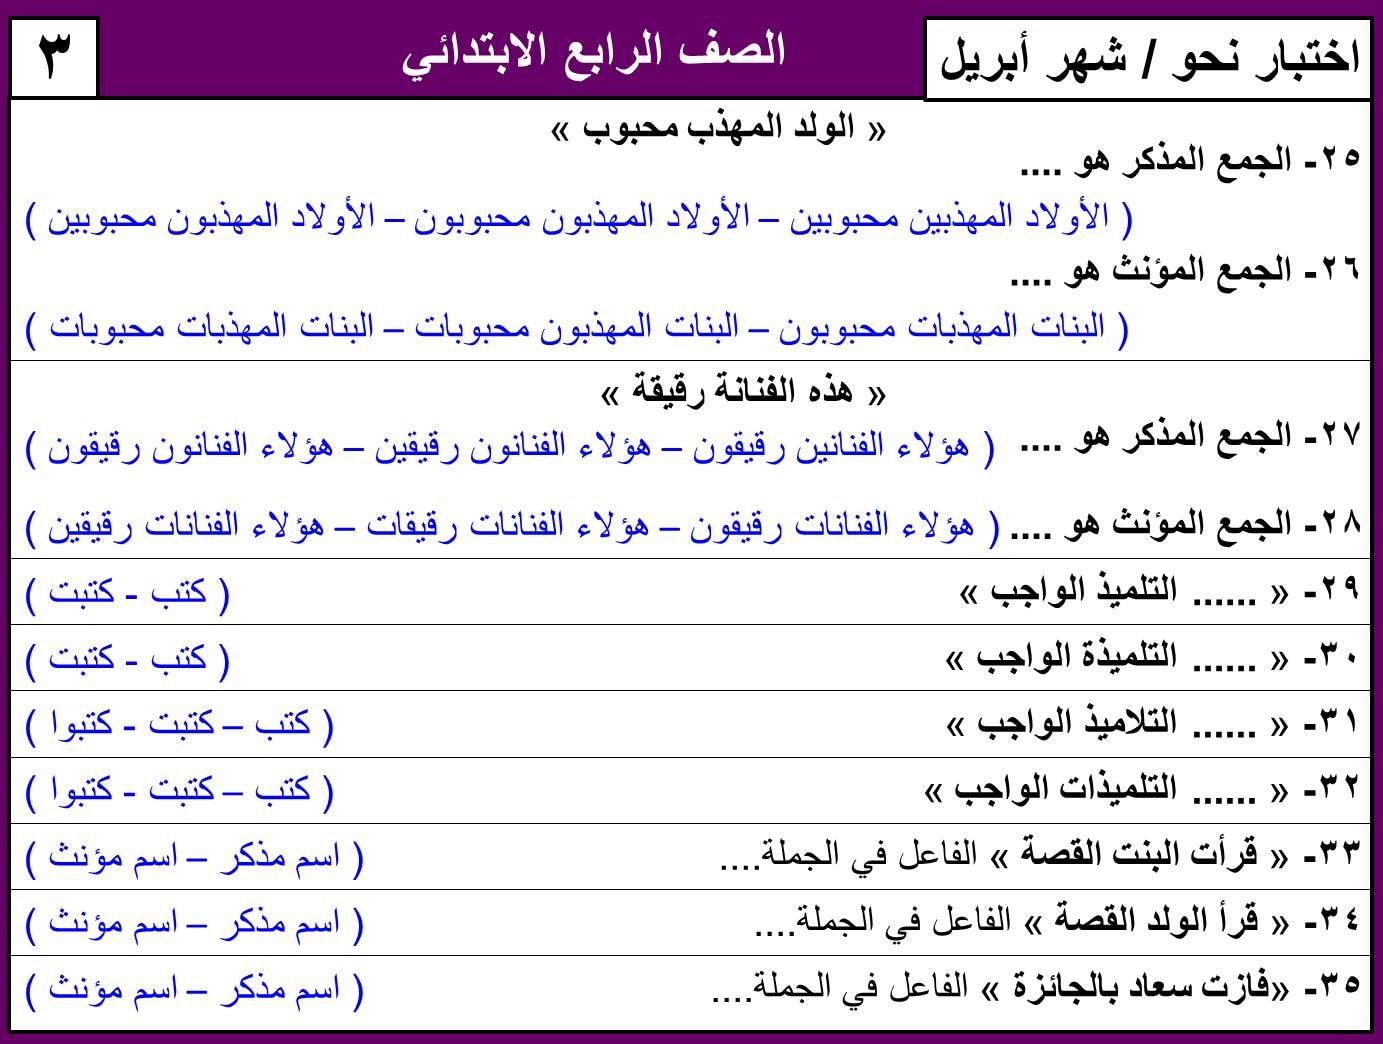 نماذج امتحان لغة عربية منهج ابريل الصف الرابع الابتدائي ترم ثاني بالاجابات 9